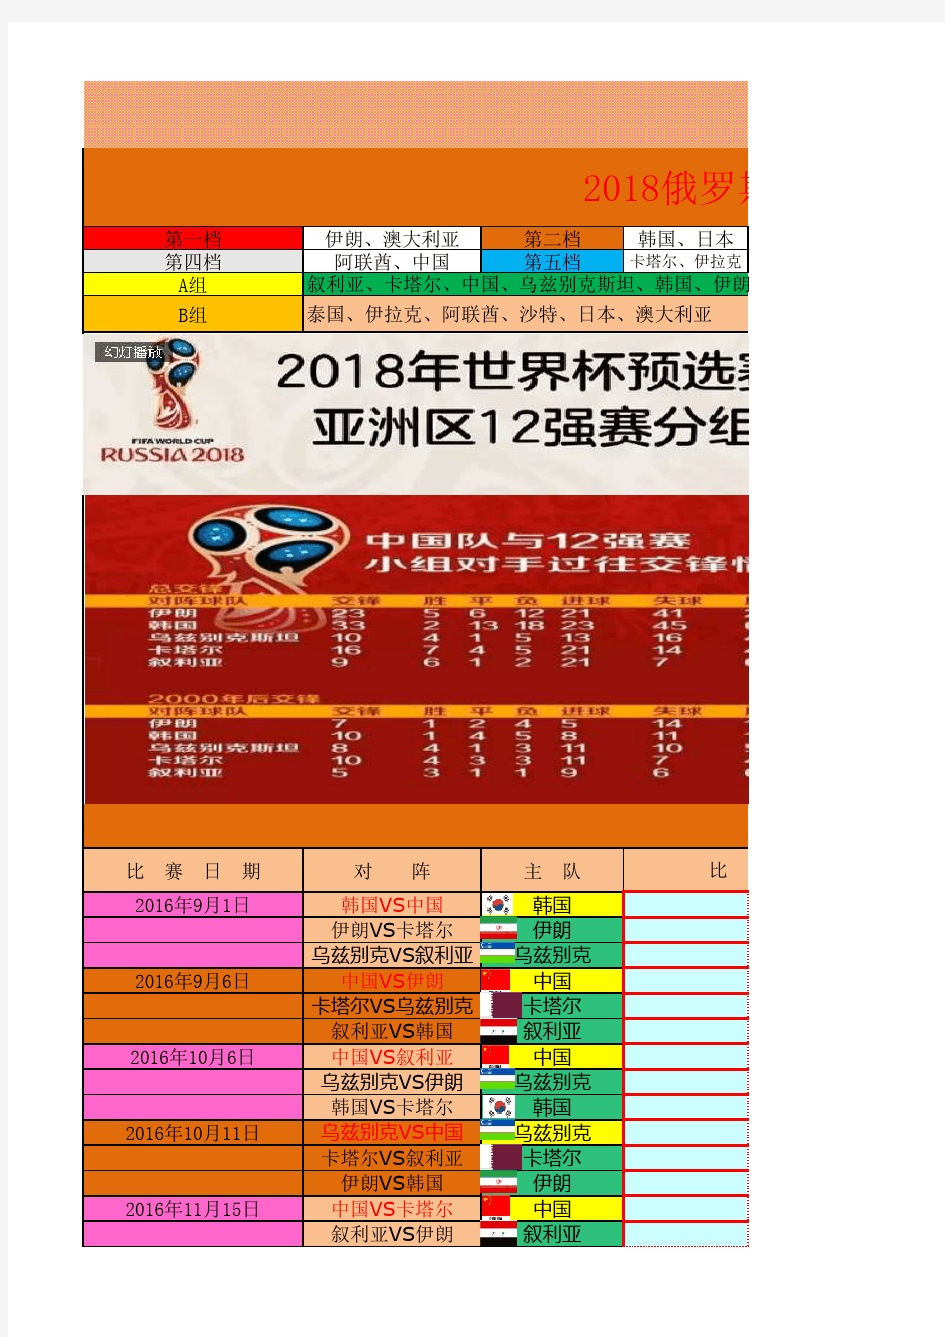 2018俄罗斯世界杯亚洲区预选赛12强赛(自动更新排名)